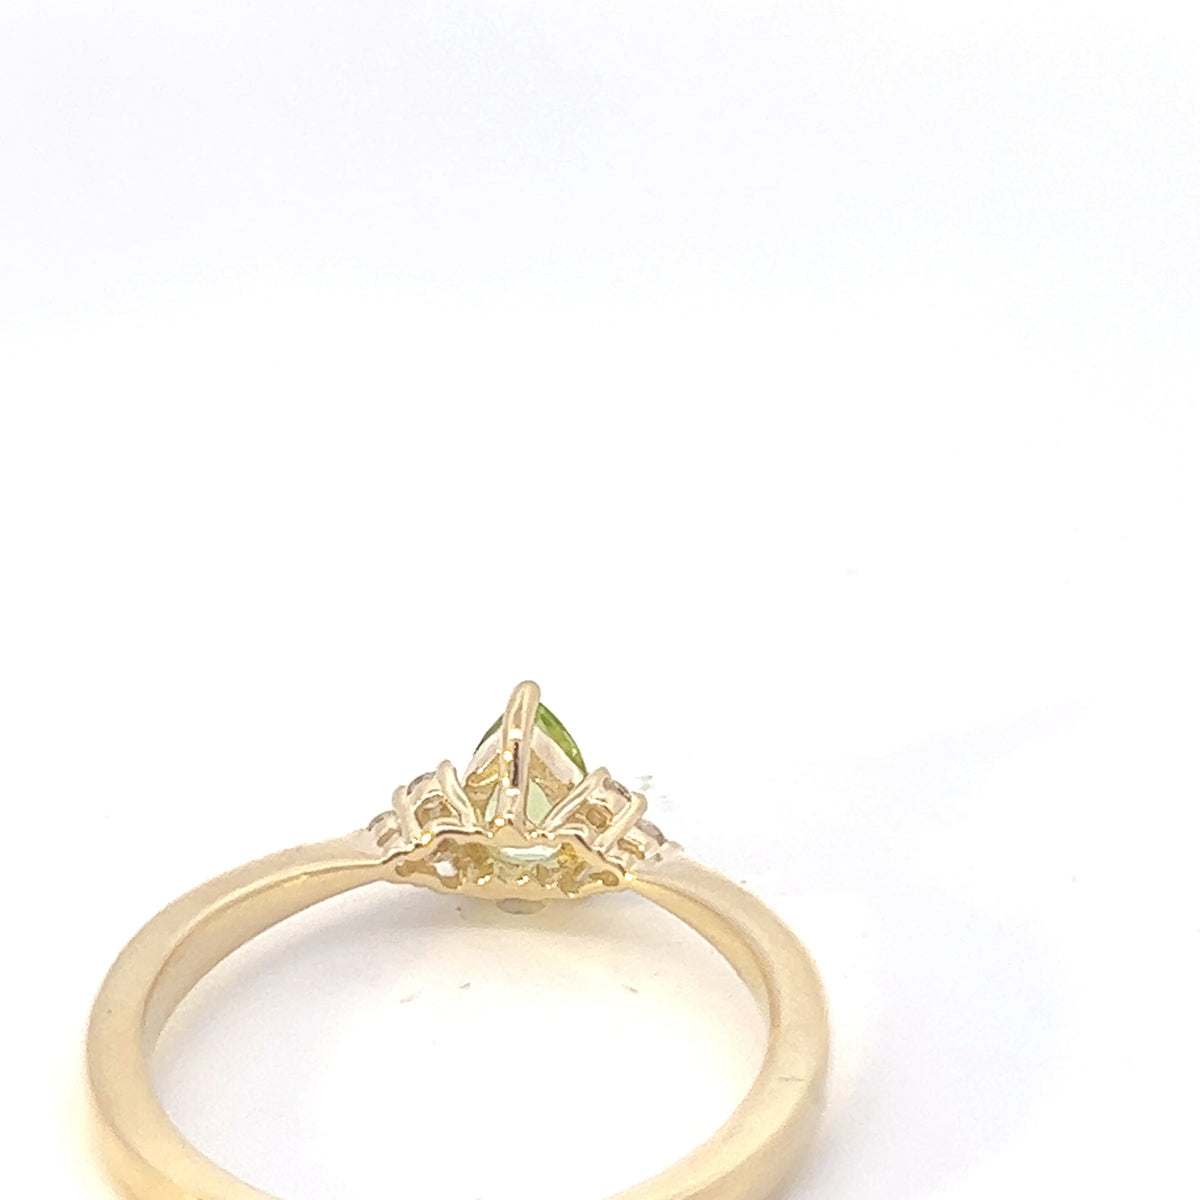 10K Yellow Gold Peridot and Diamond Ring - Size 7